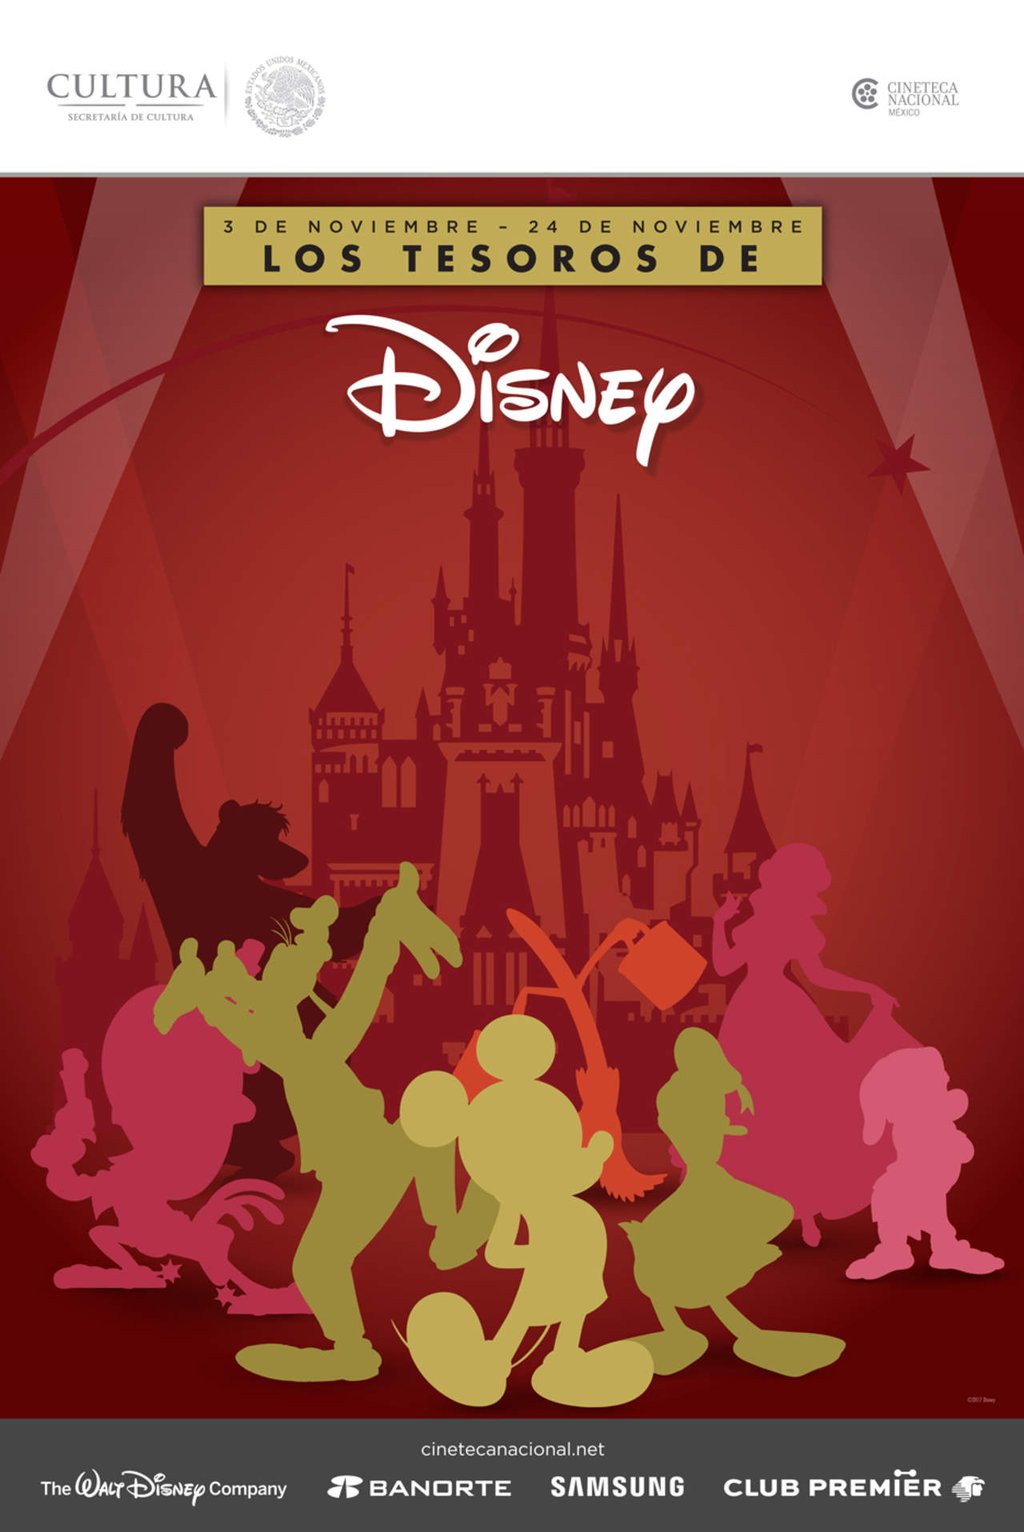 La magia de Disney llegará a la Cineteca Nacional